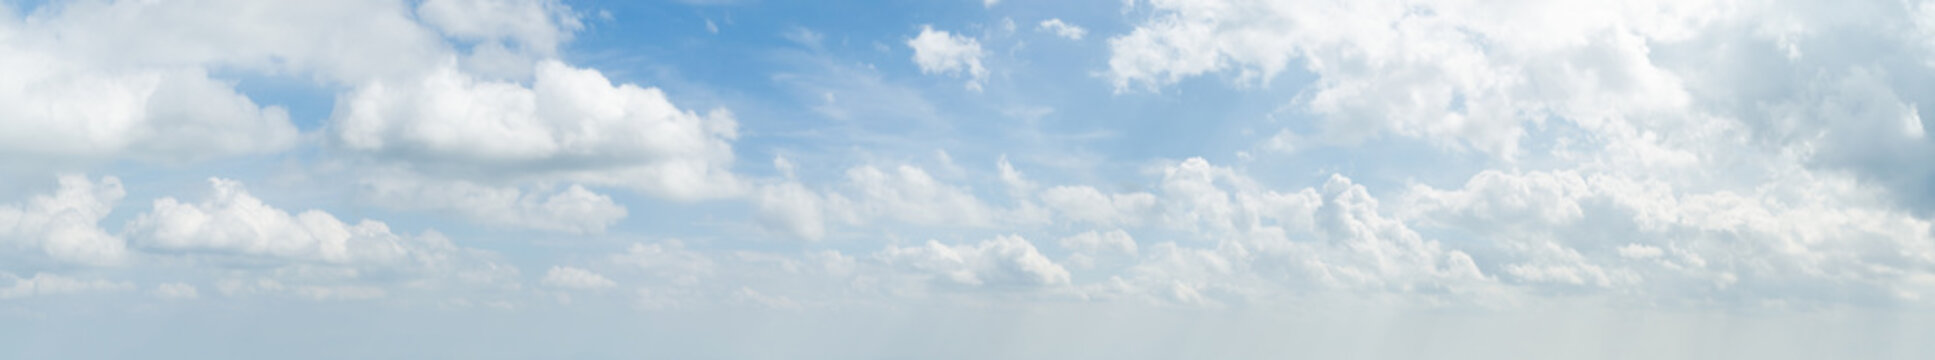 Fototapeta Panorama biel chmura i niebieskie niebo w ranku